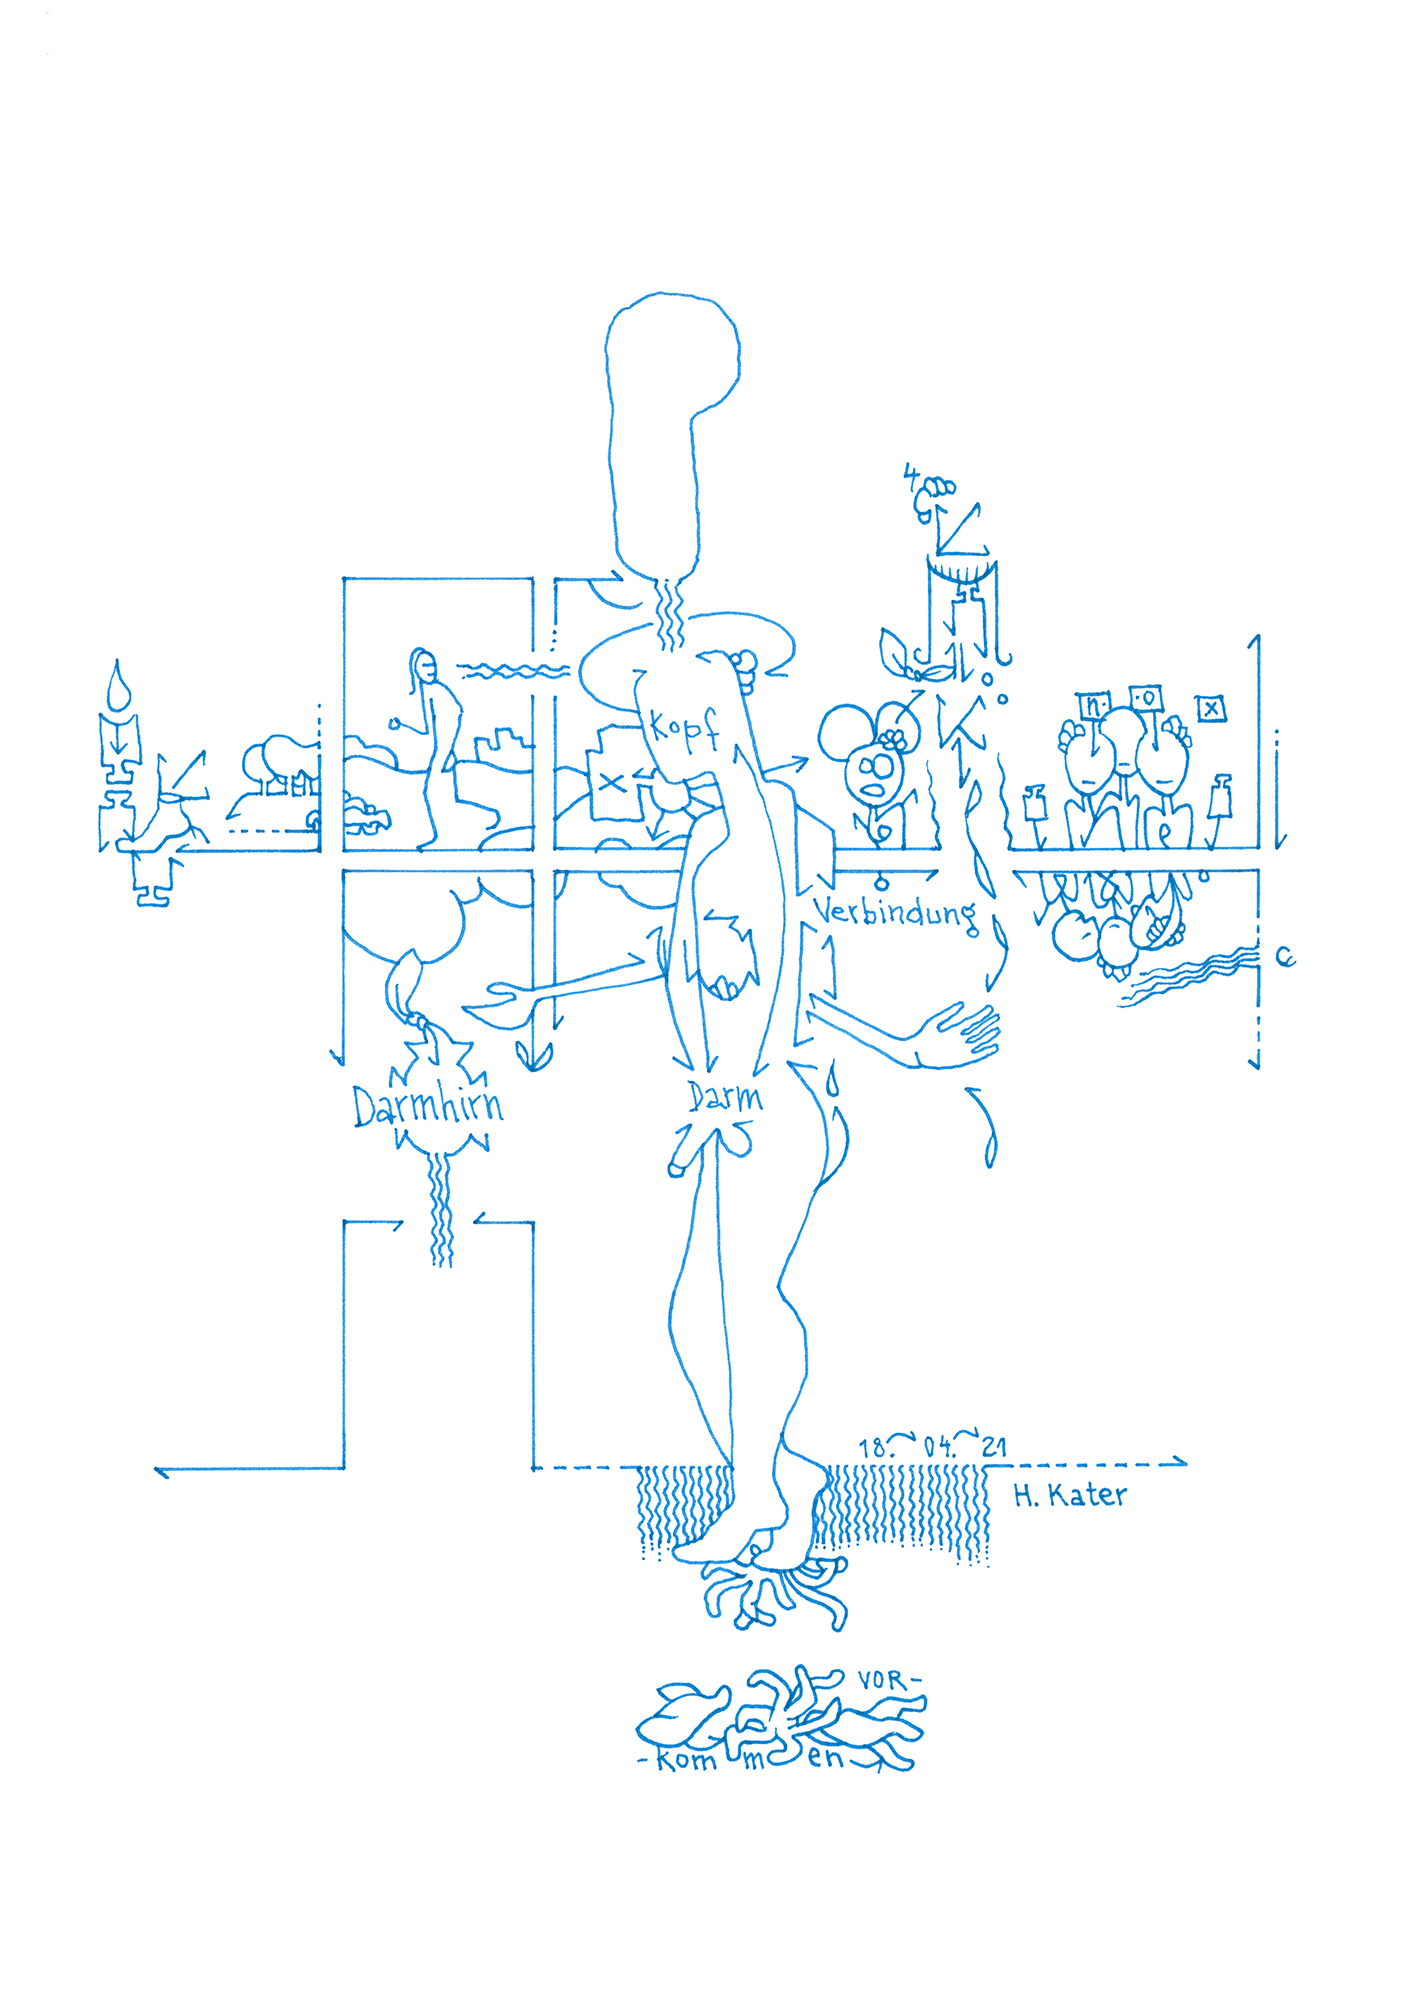 Hannes Kater: Tageszeichnung (Zeichnung/drawing) vom 18.04.2021 (1414 x 2000 Pixel)